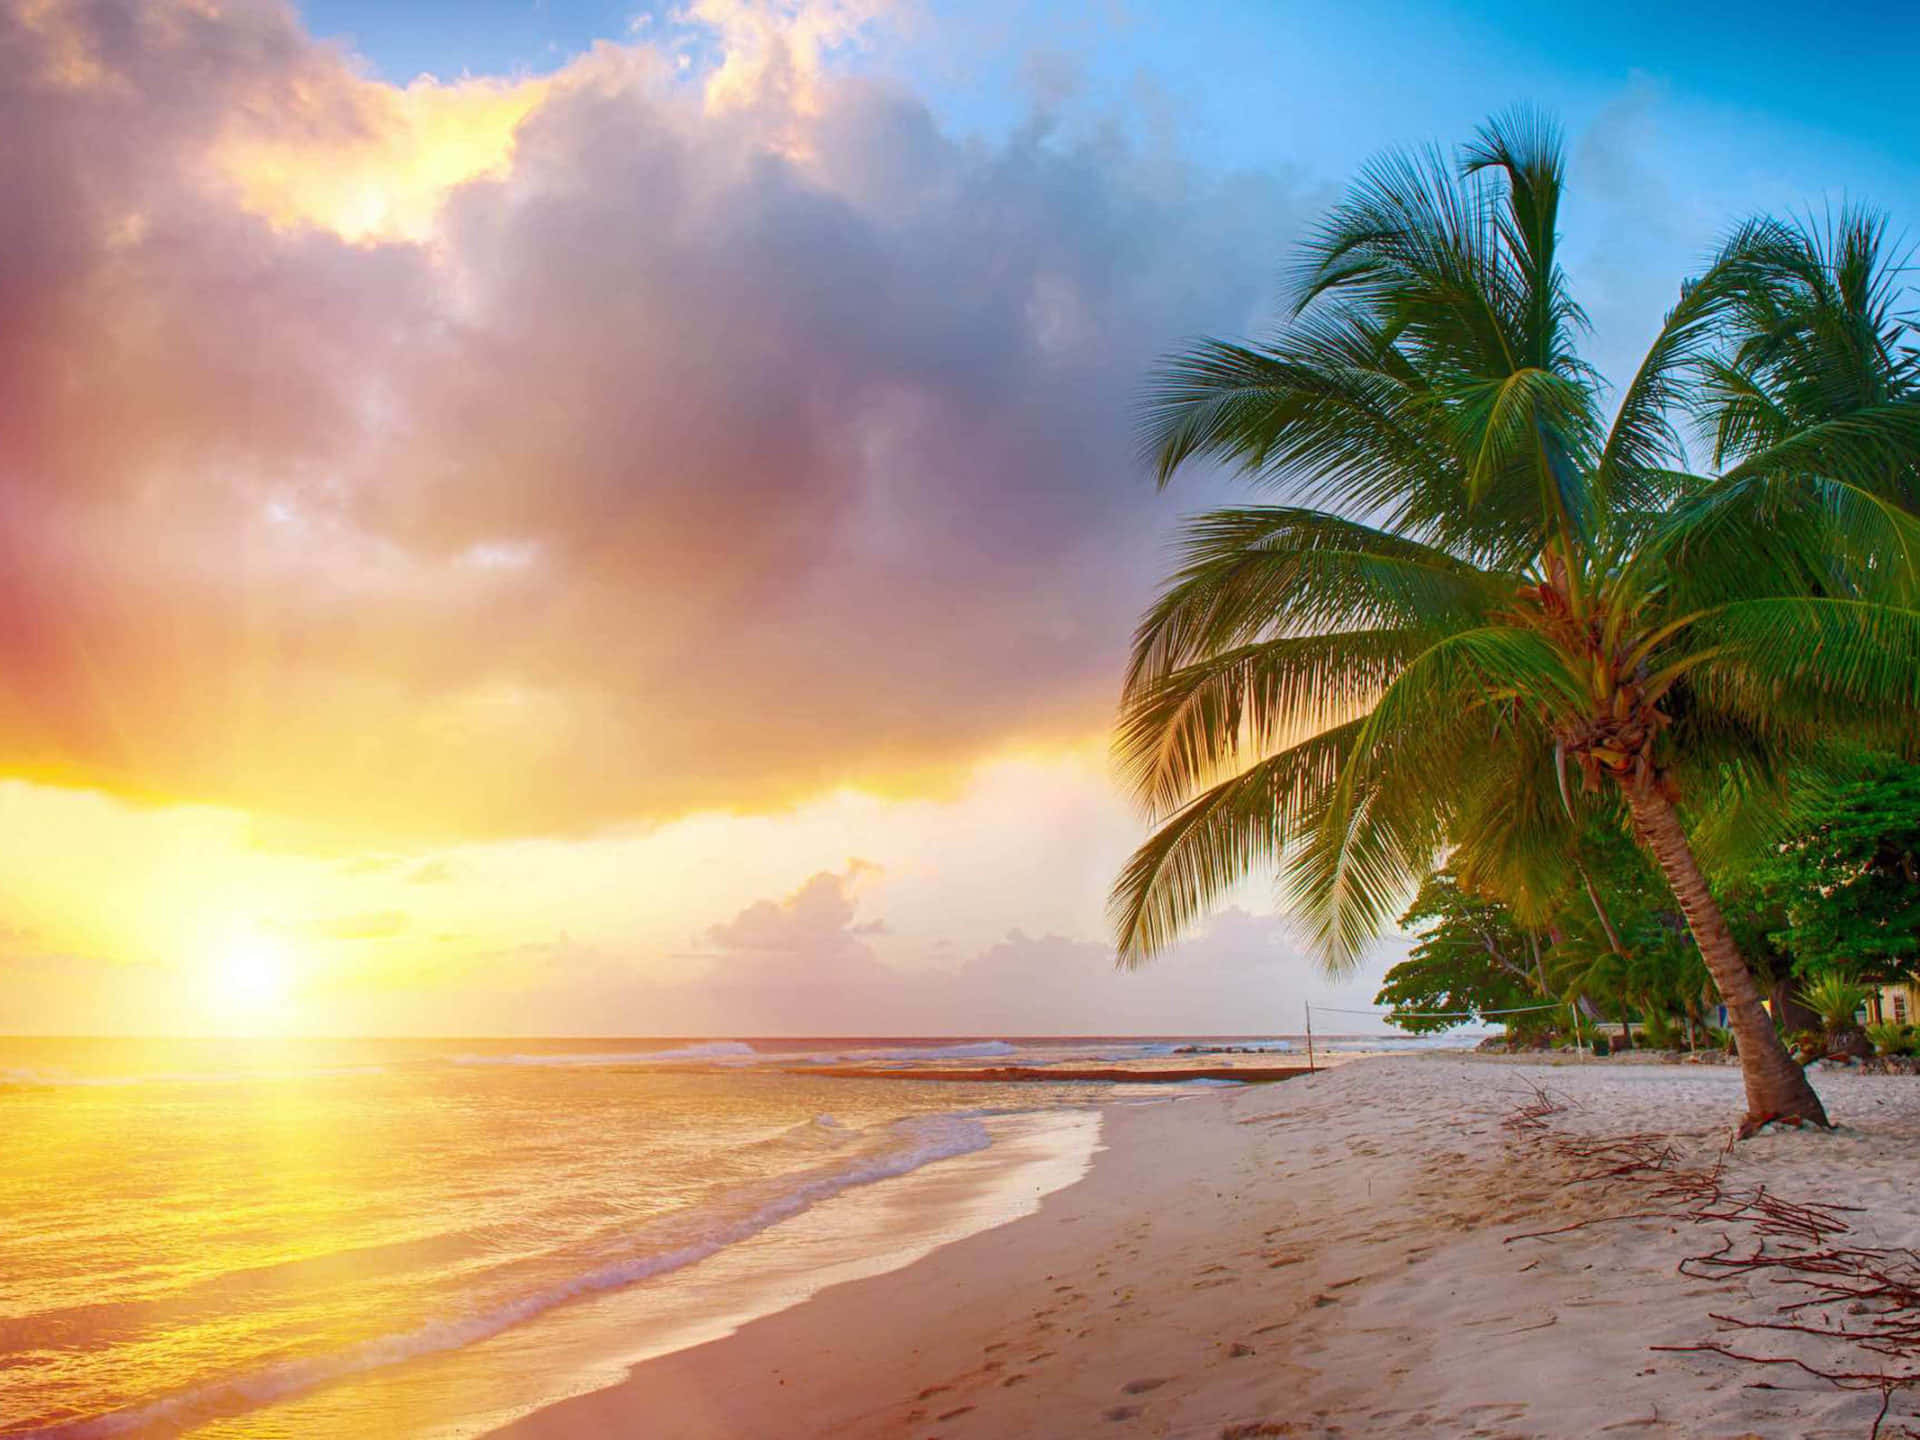 Njutav En Dag Av Paradiset Med Utsikt Över En Karibisk Strand På Din Dator- Eller Mobilbakgrund. Wallpaper